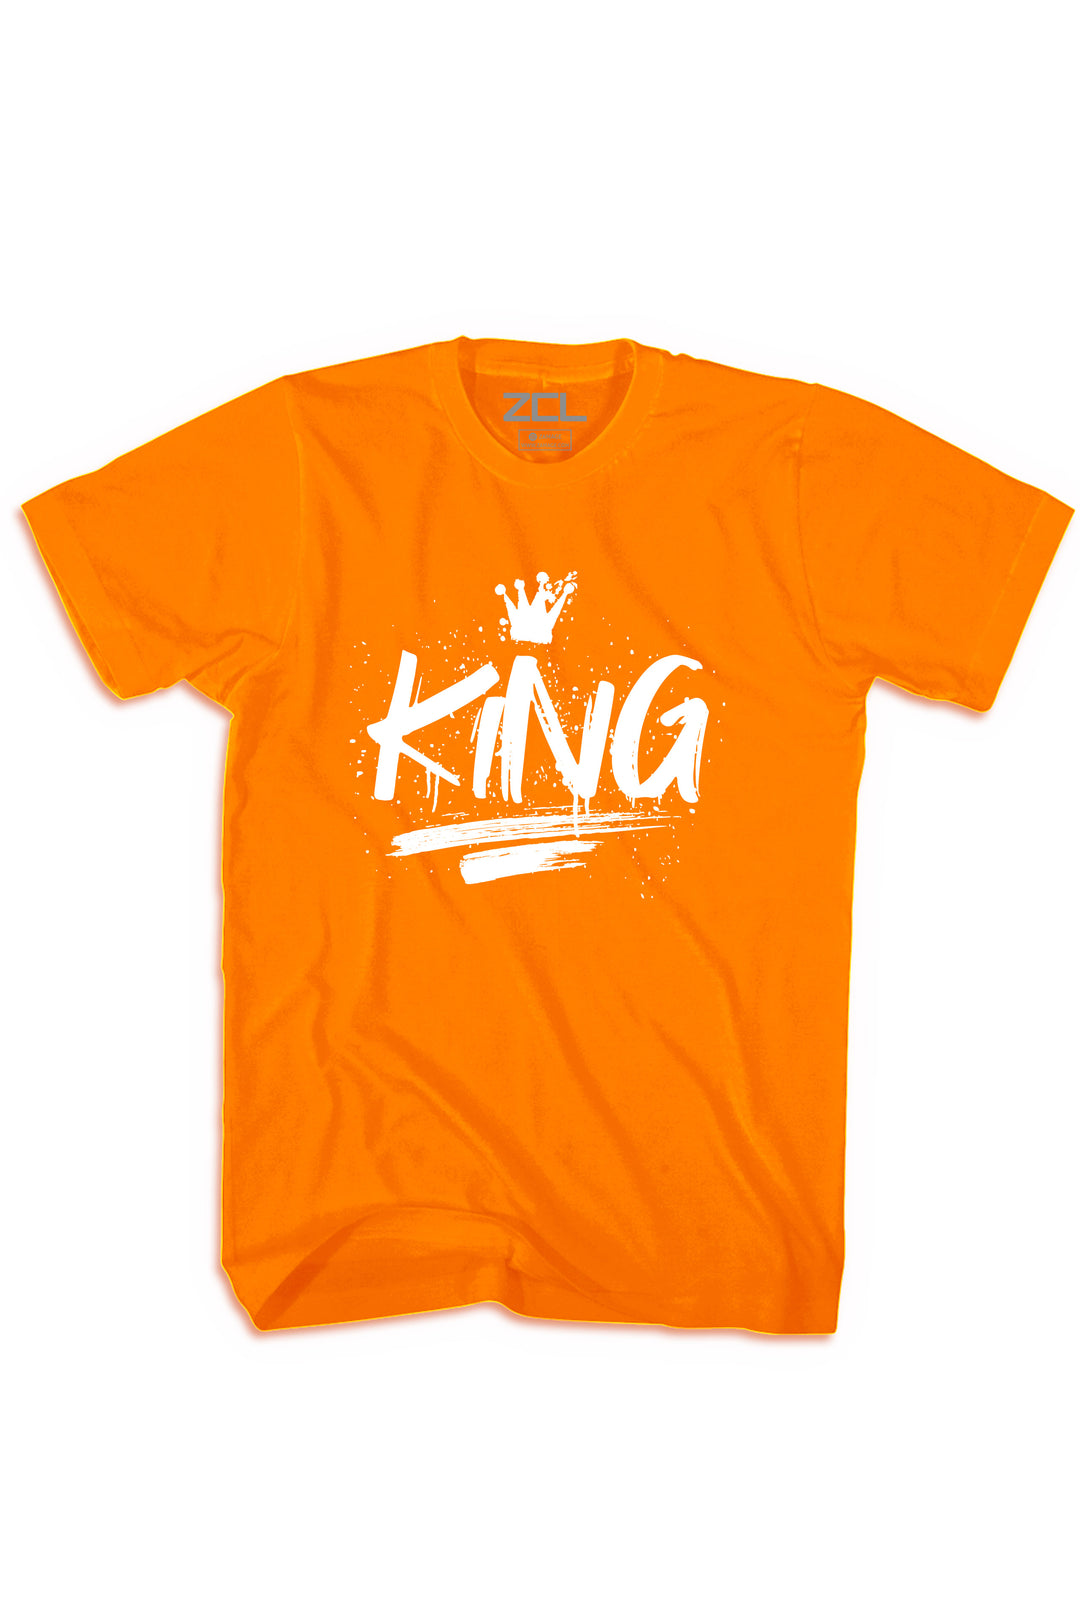 King Tee (White Logo) - Zamage